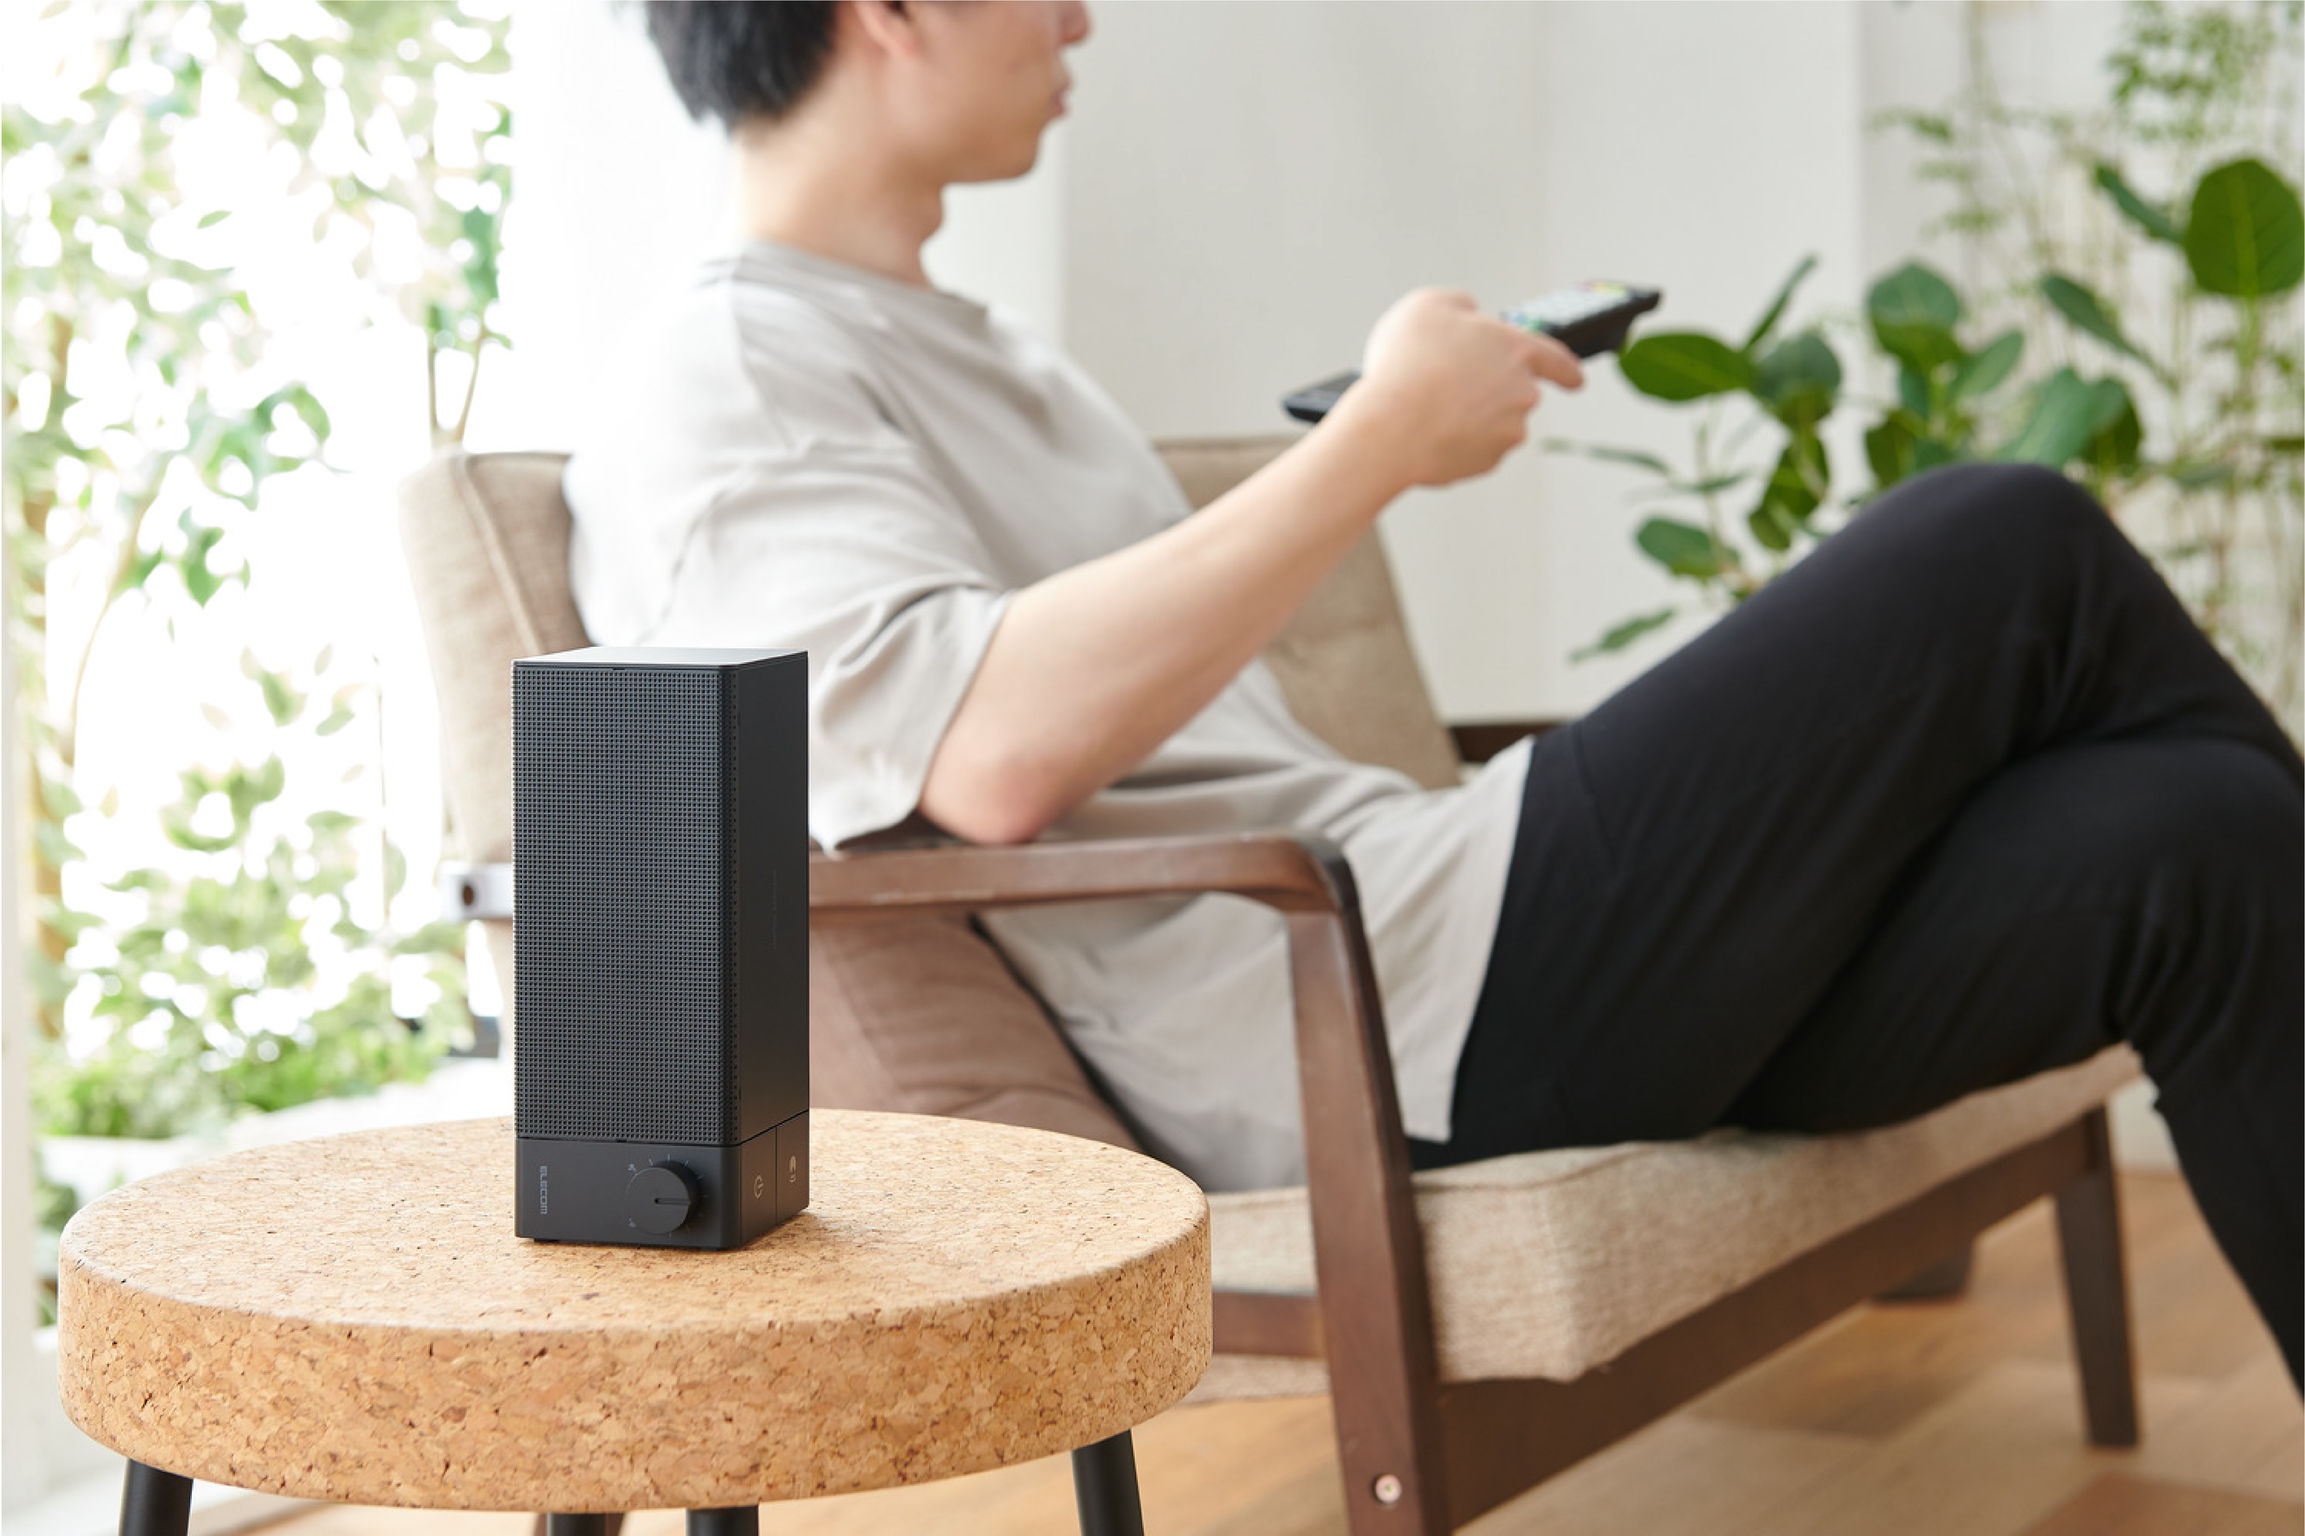 Handheld wireless speaker for TV